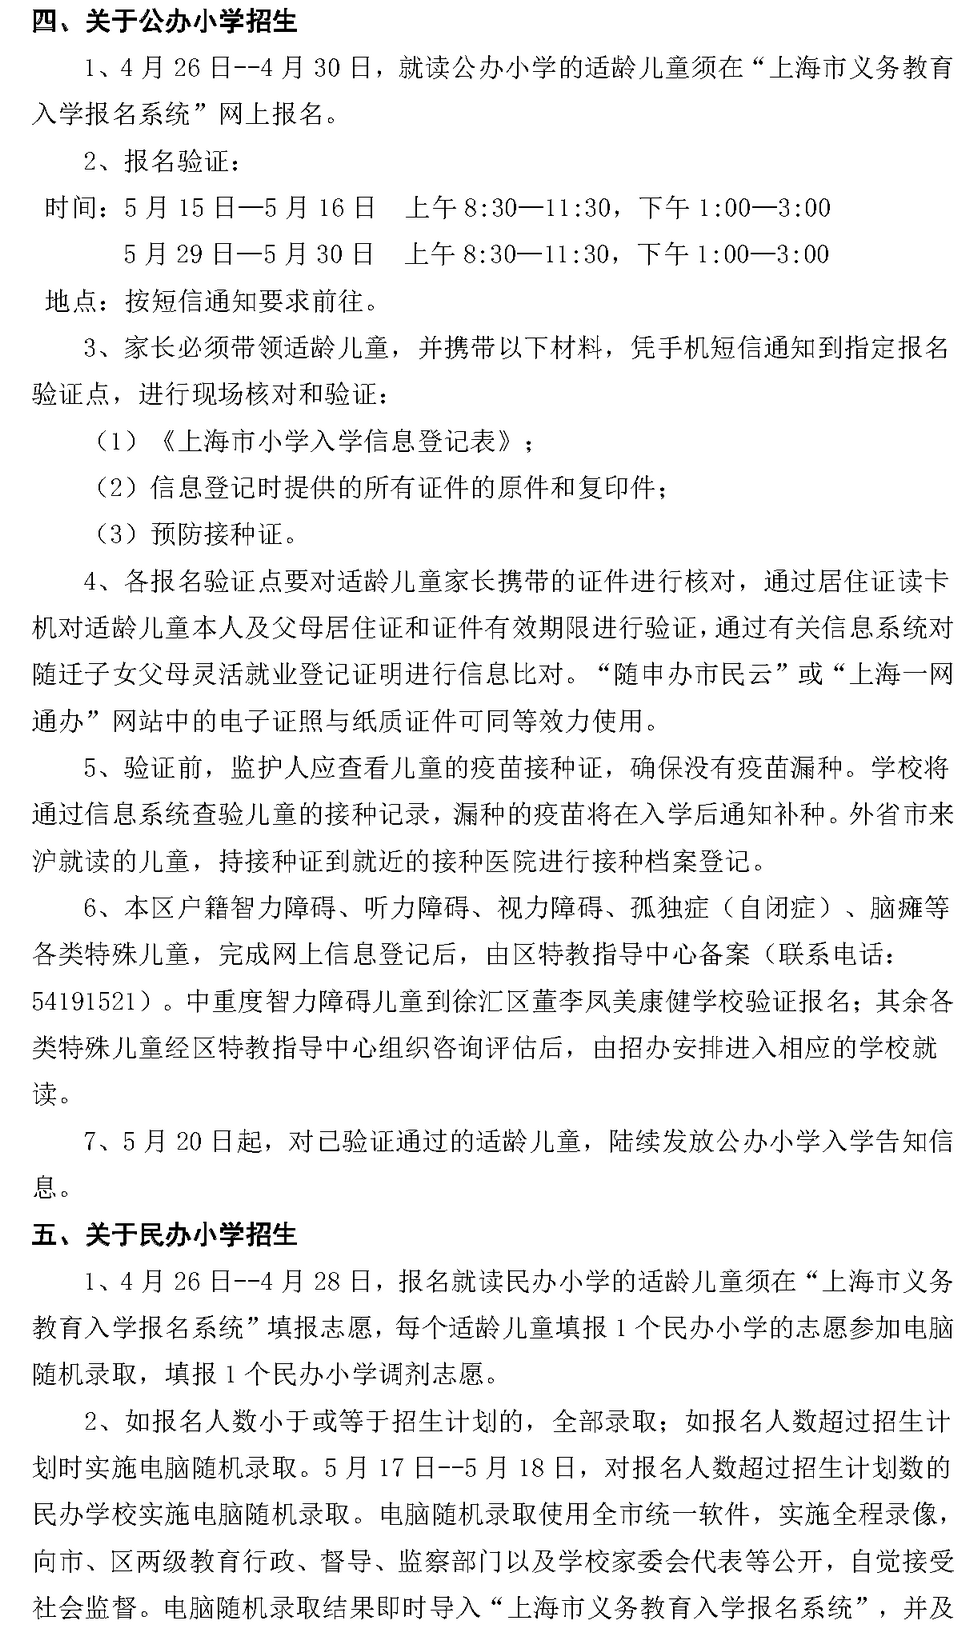 2021年徐汇区小学一年级招生通告20200319_页面_3.png